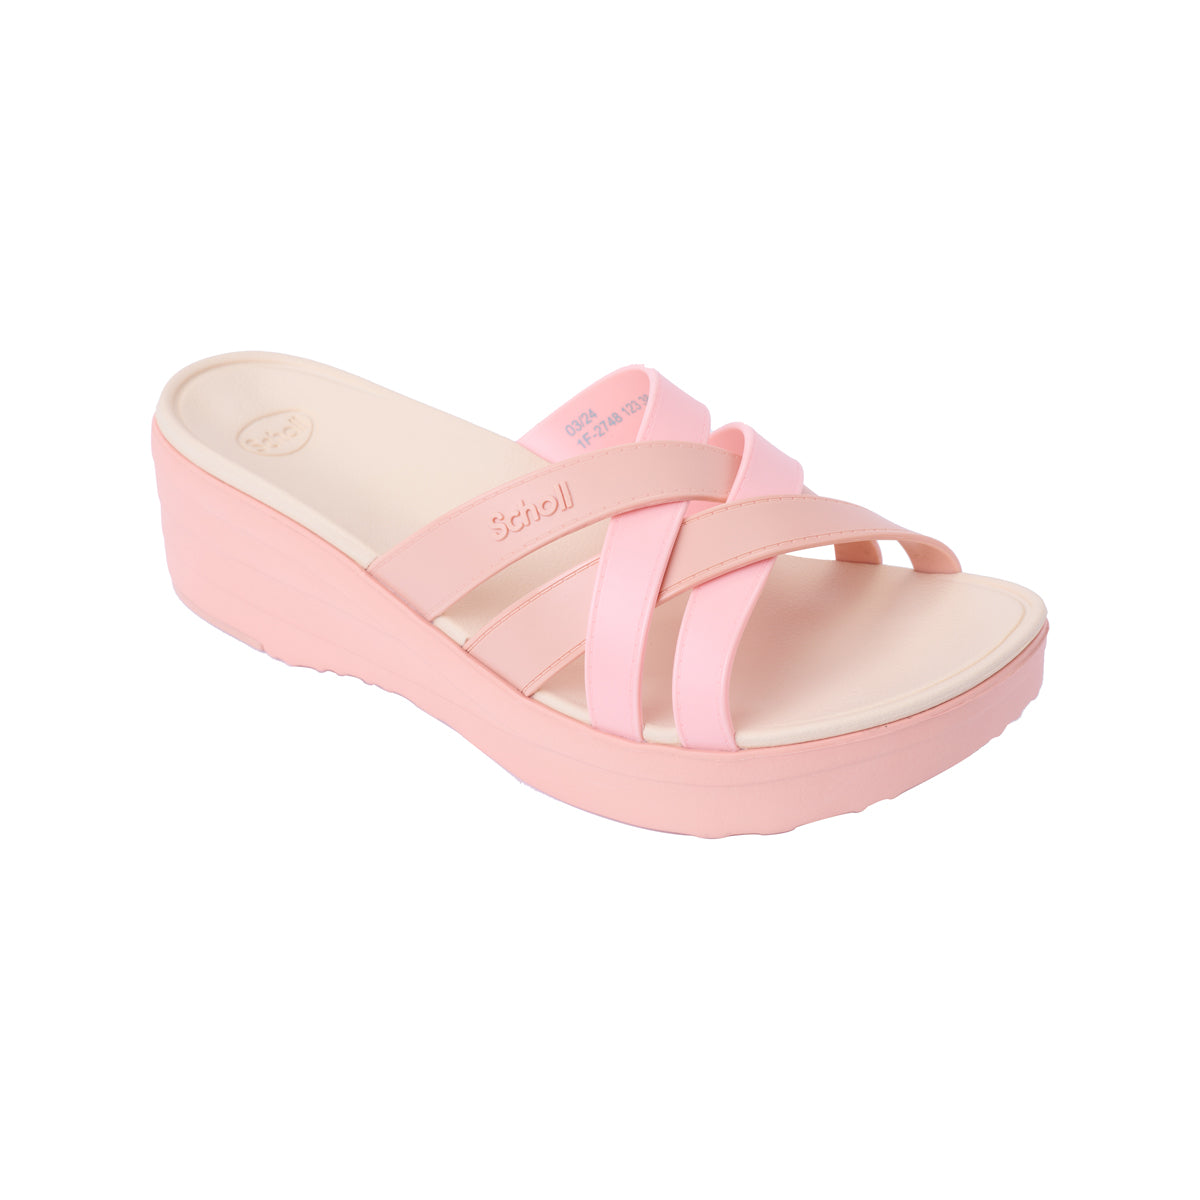 รองเท้าแตะ ผู้หญิง สกอลล์ แบบสวม รุ่น Cindy II สี Soft Pink